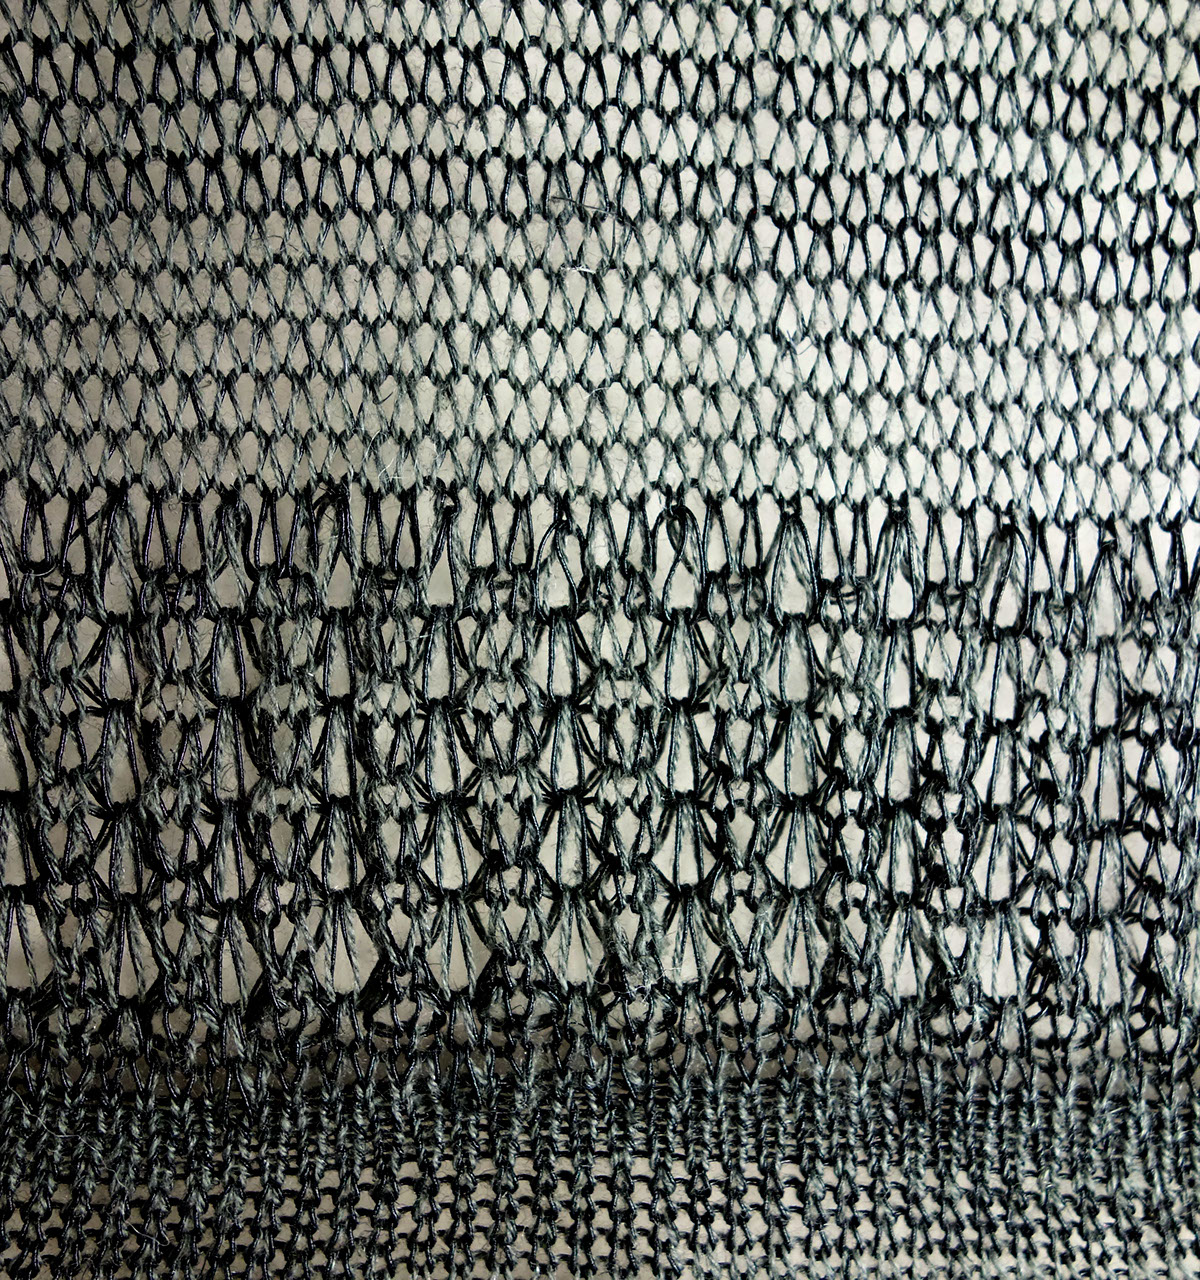 apparel knits machine knitting